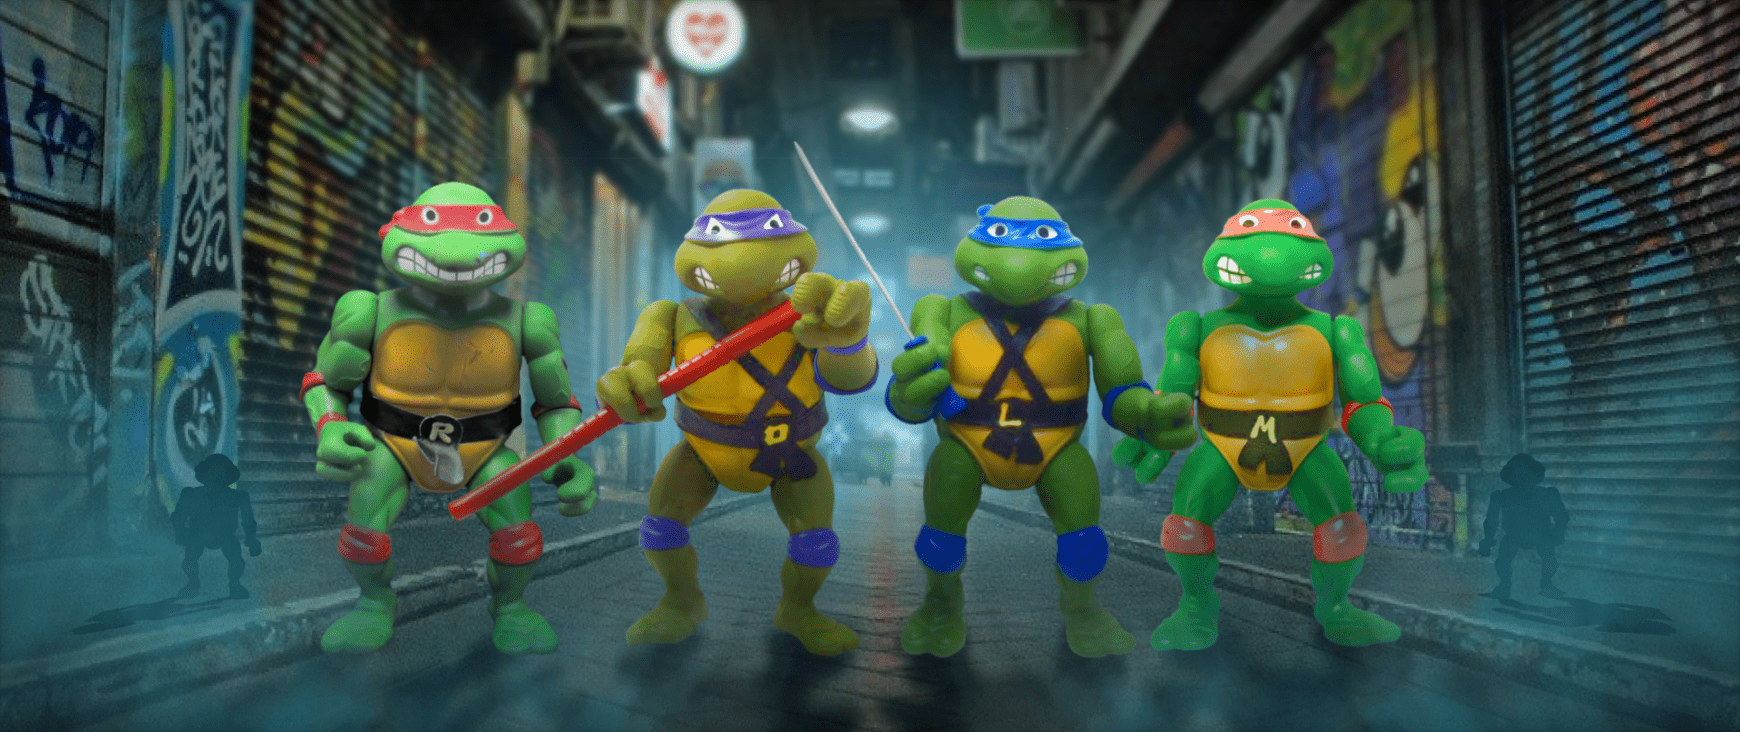 Giant Turtles Teenage Mutant Ninja Turtles action figures